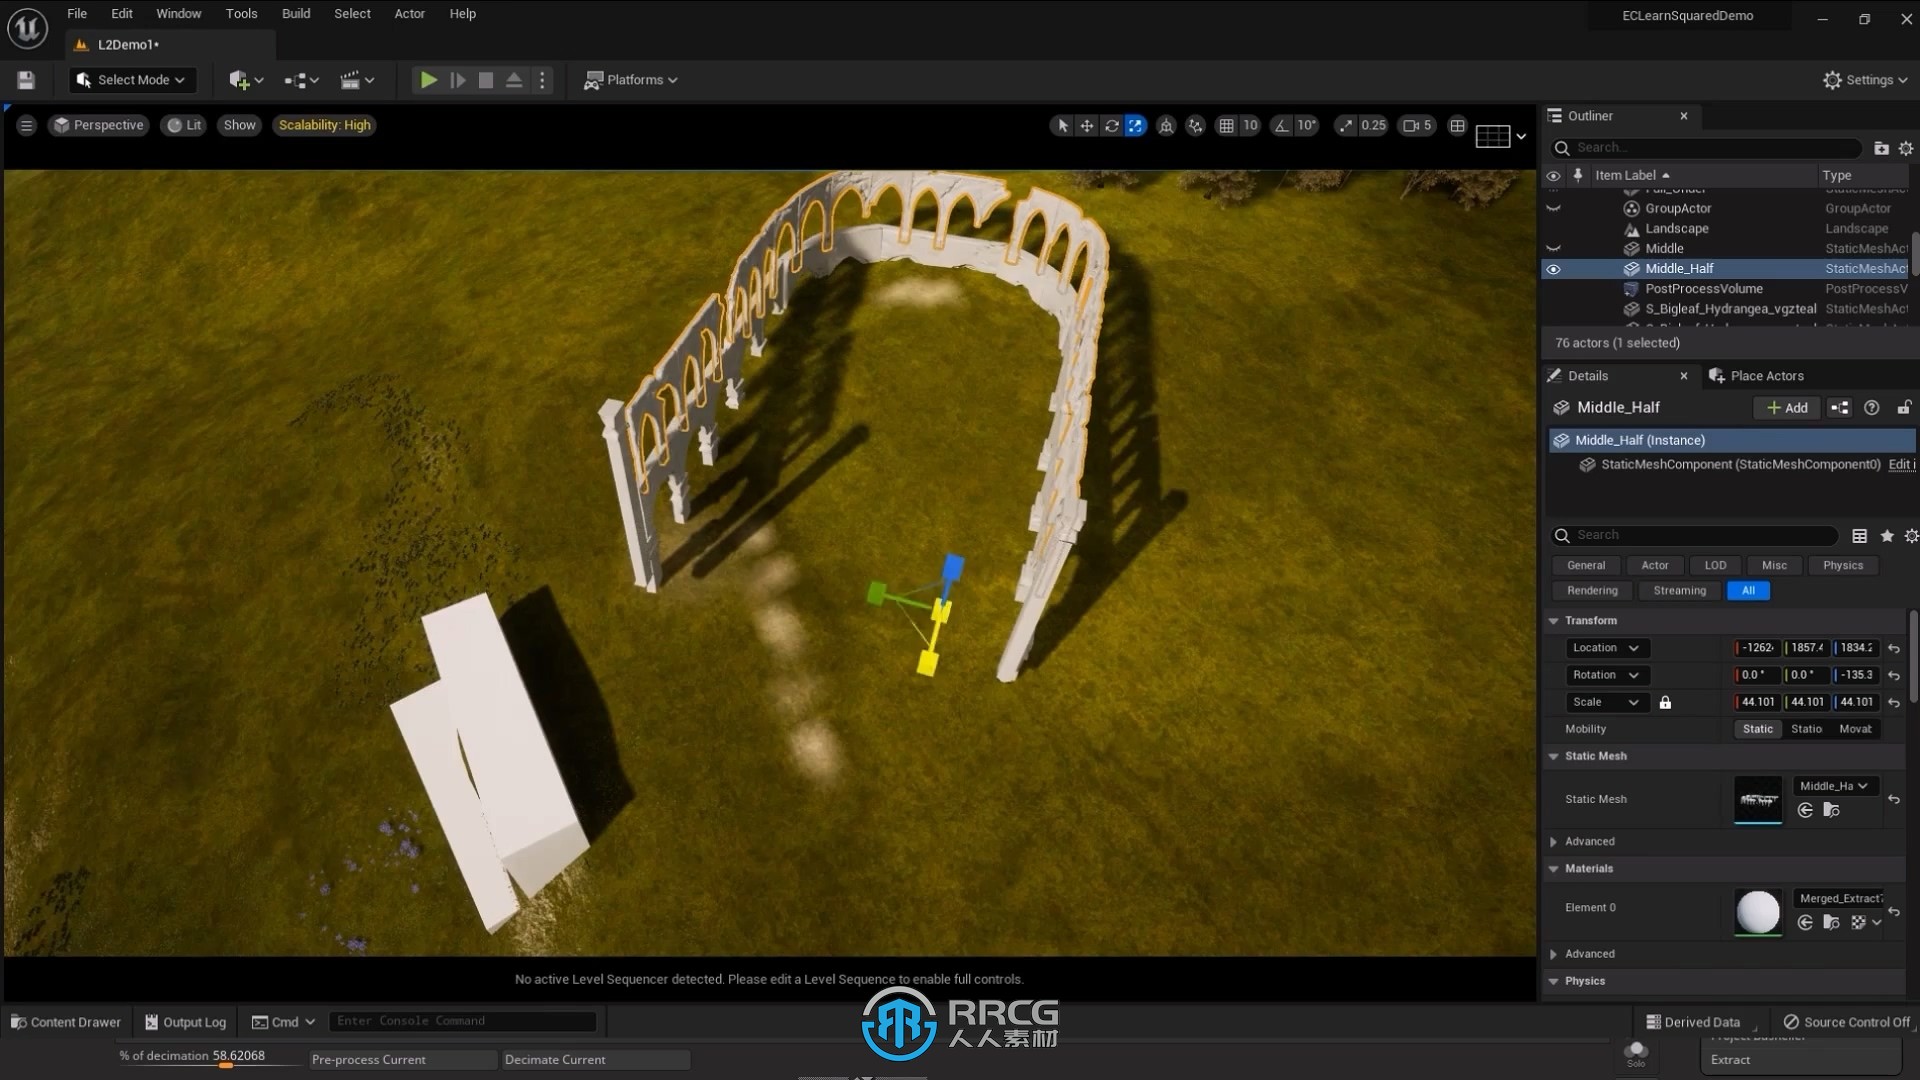 UE5虚幻引擎前沿概念艺术场景制作视频教程